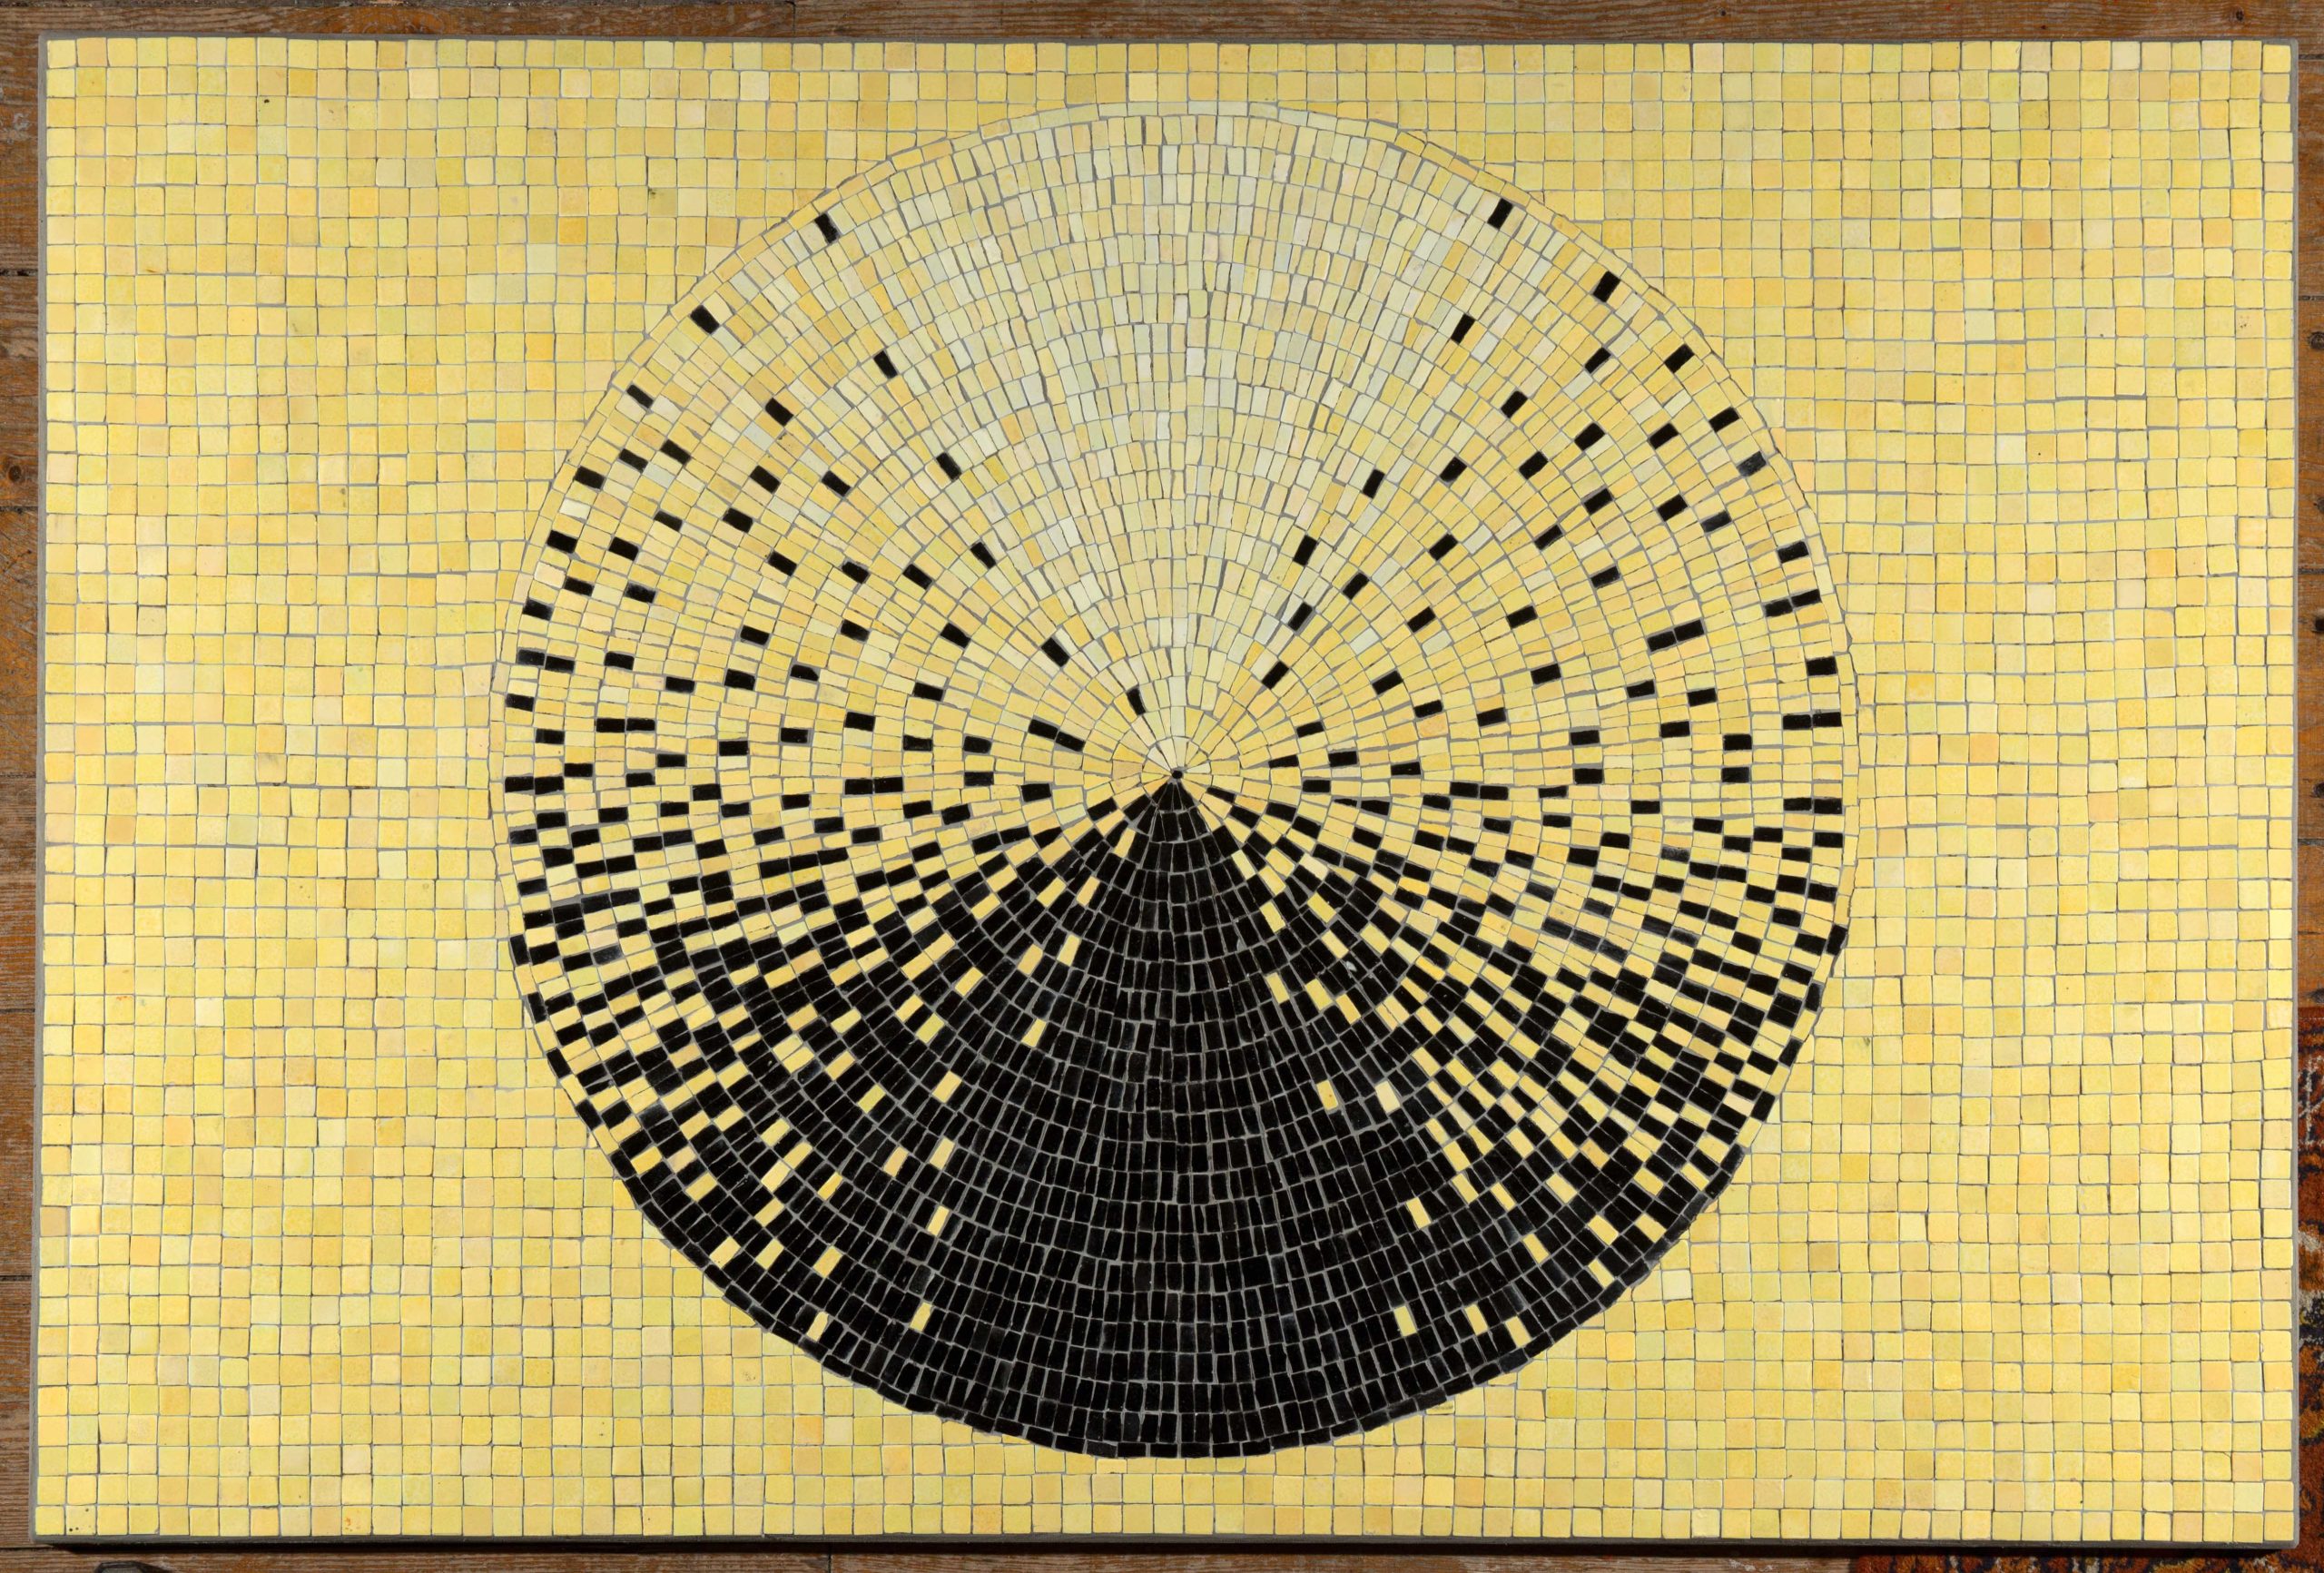 2018_Kaldi Katalin_Kúp_ceramics mosaic_100x150 cm